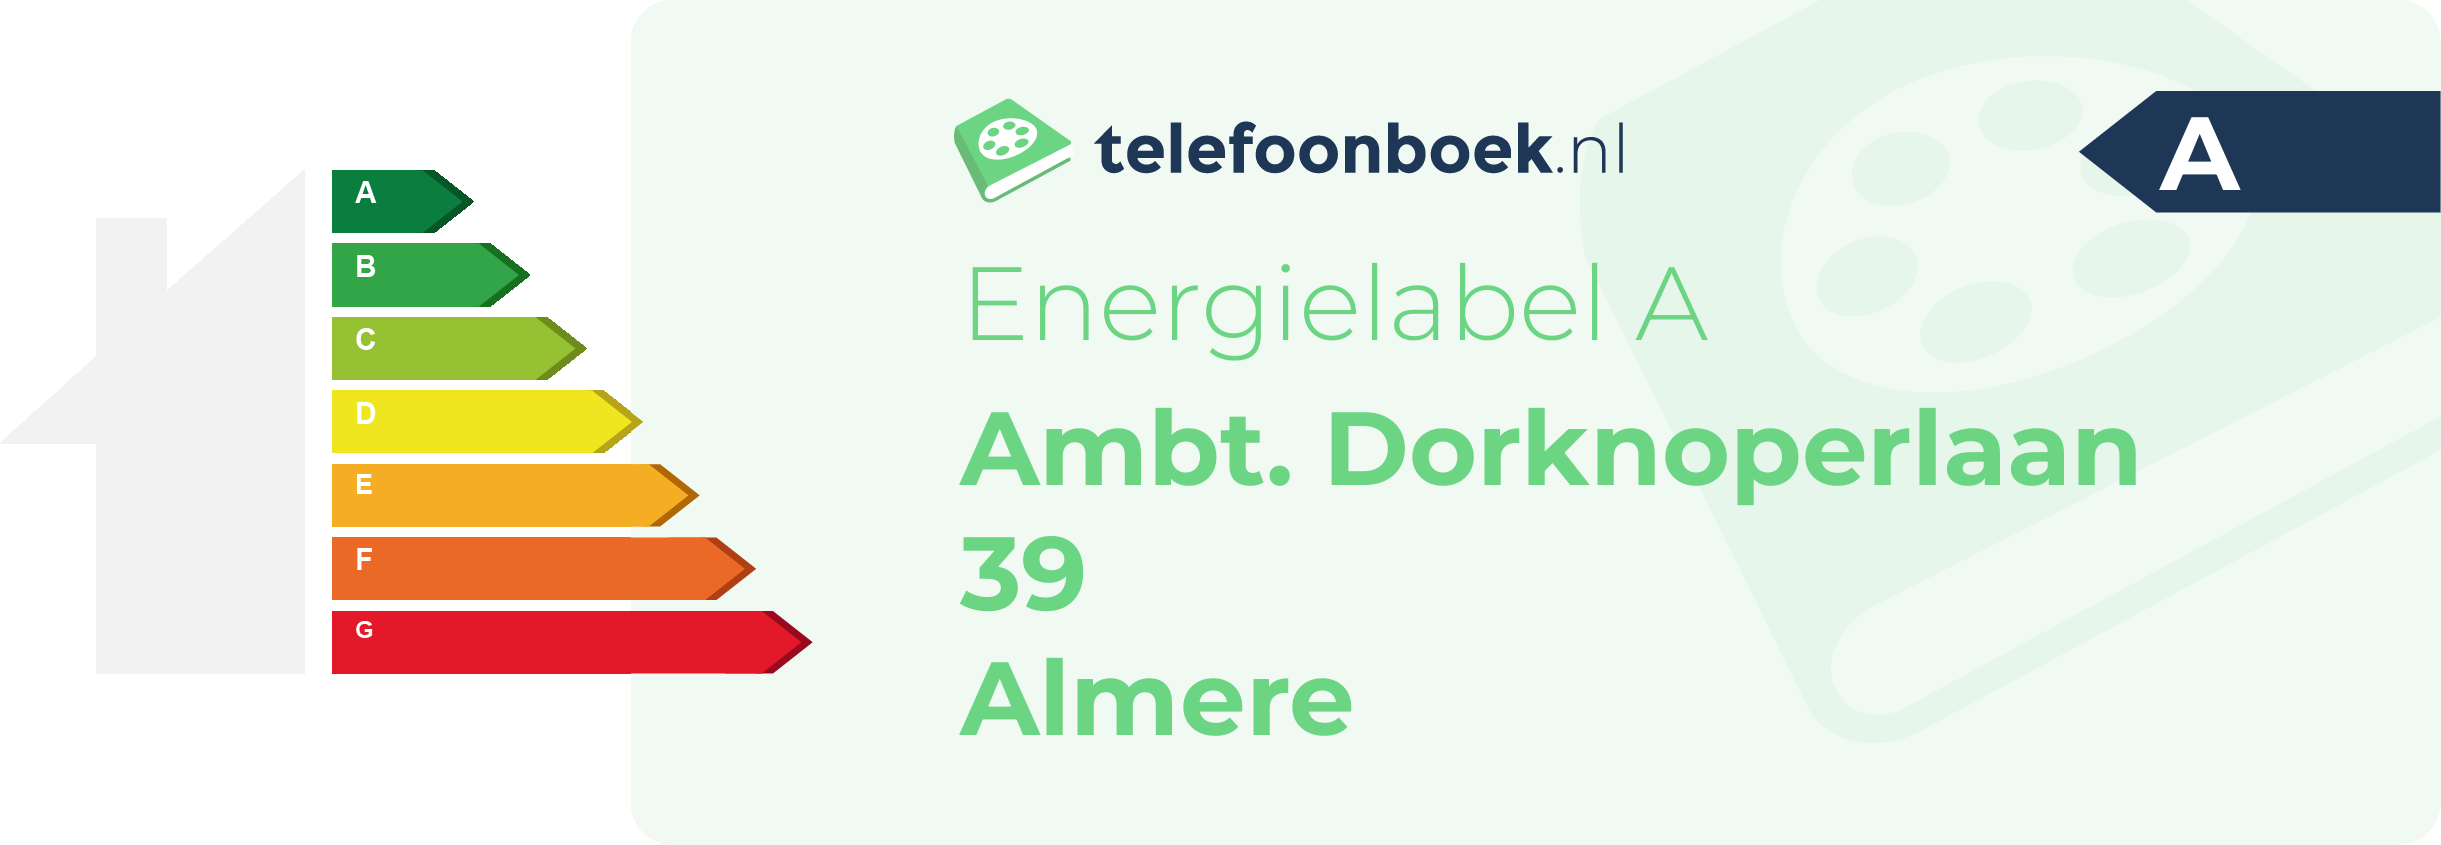 Energielabel Ambt. Dorknoperlaan 39 Almere